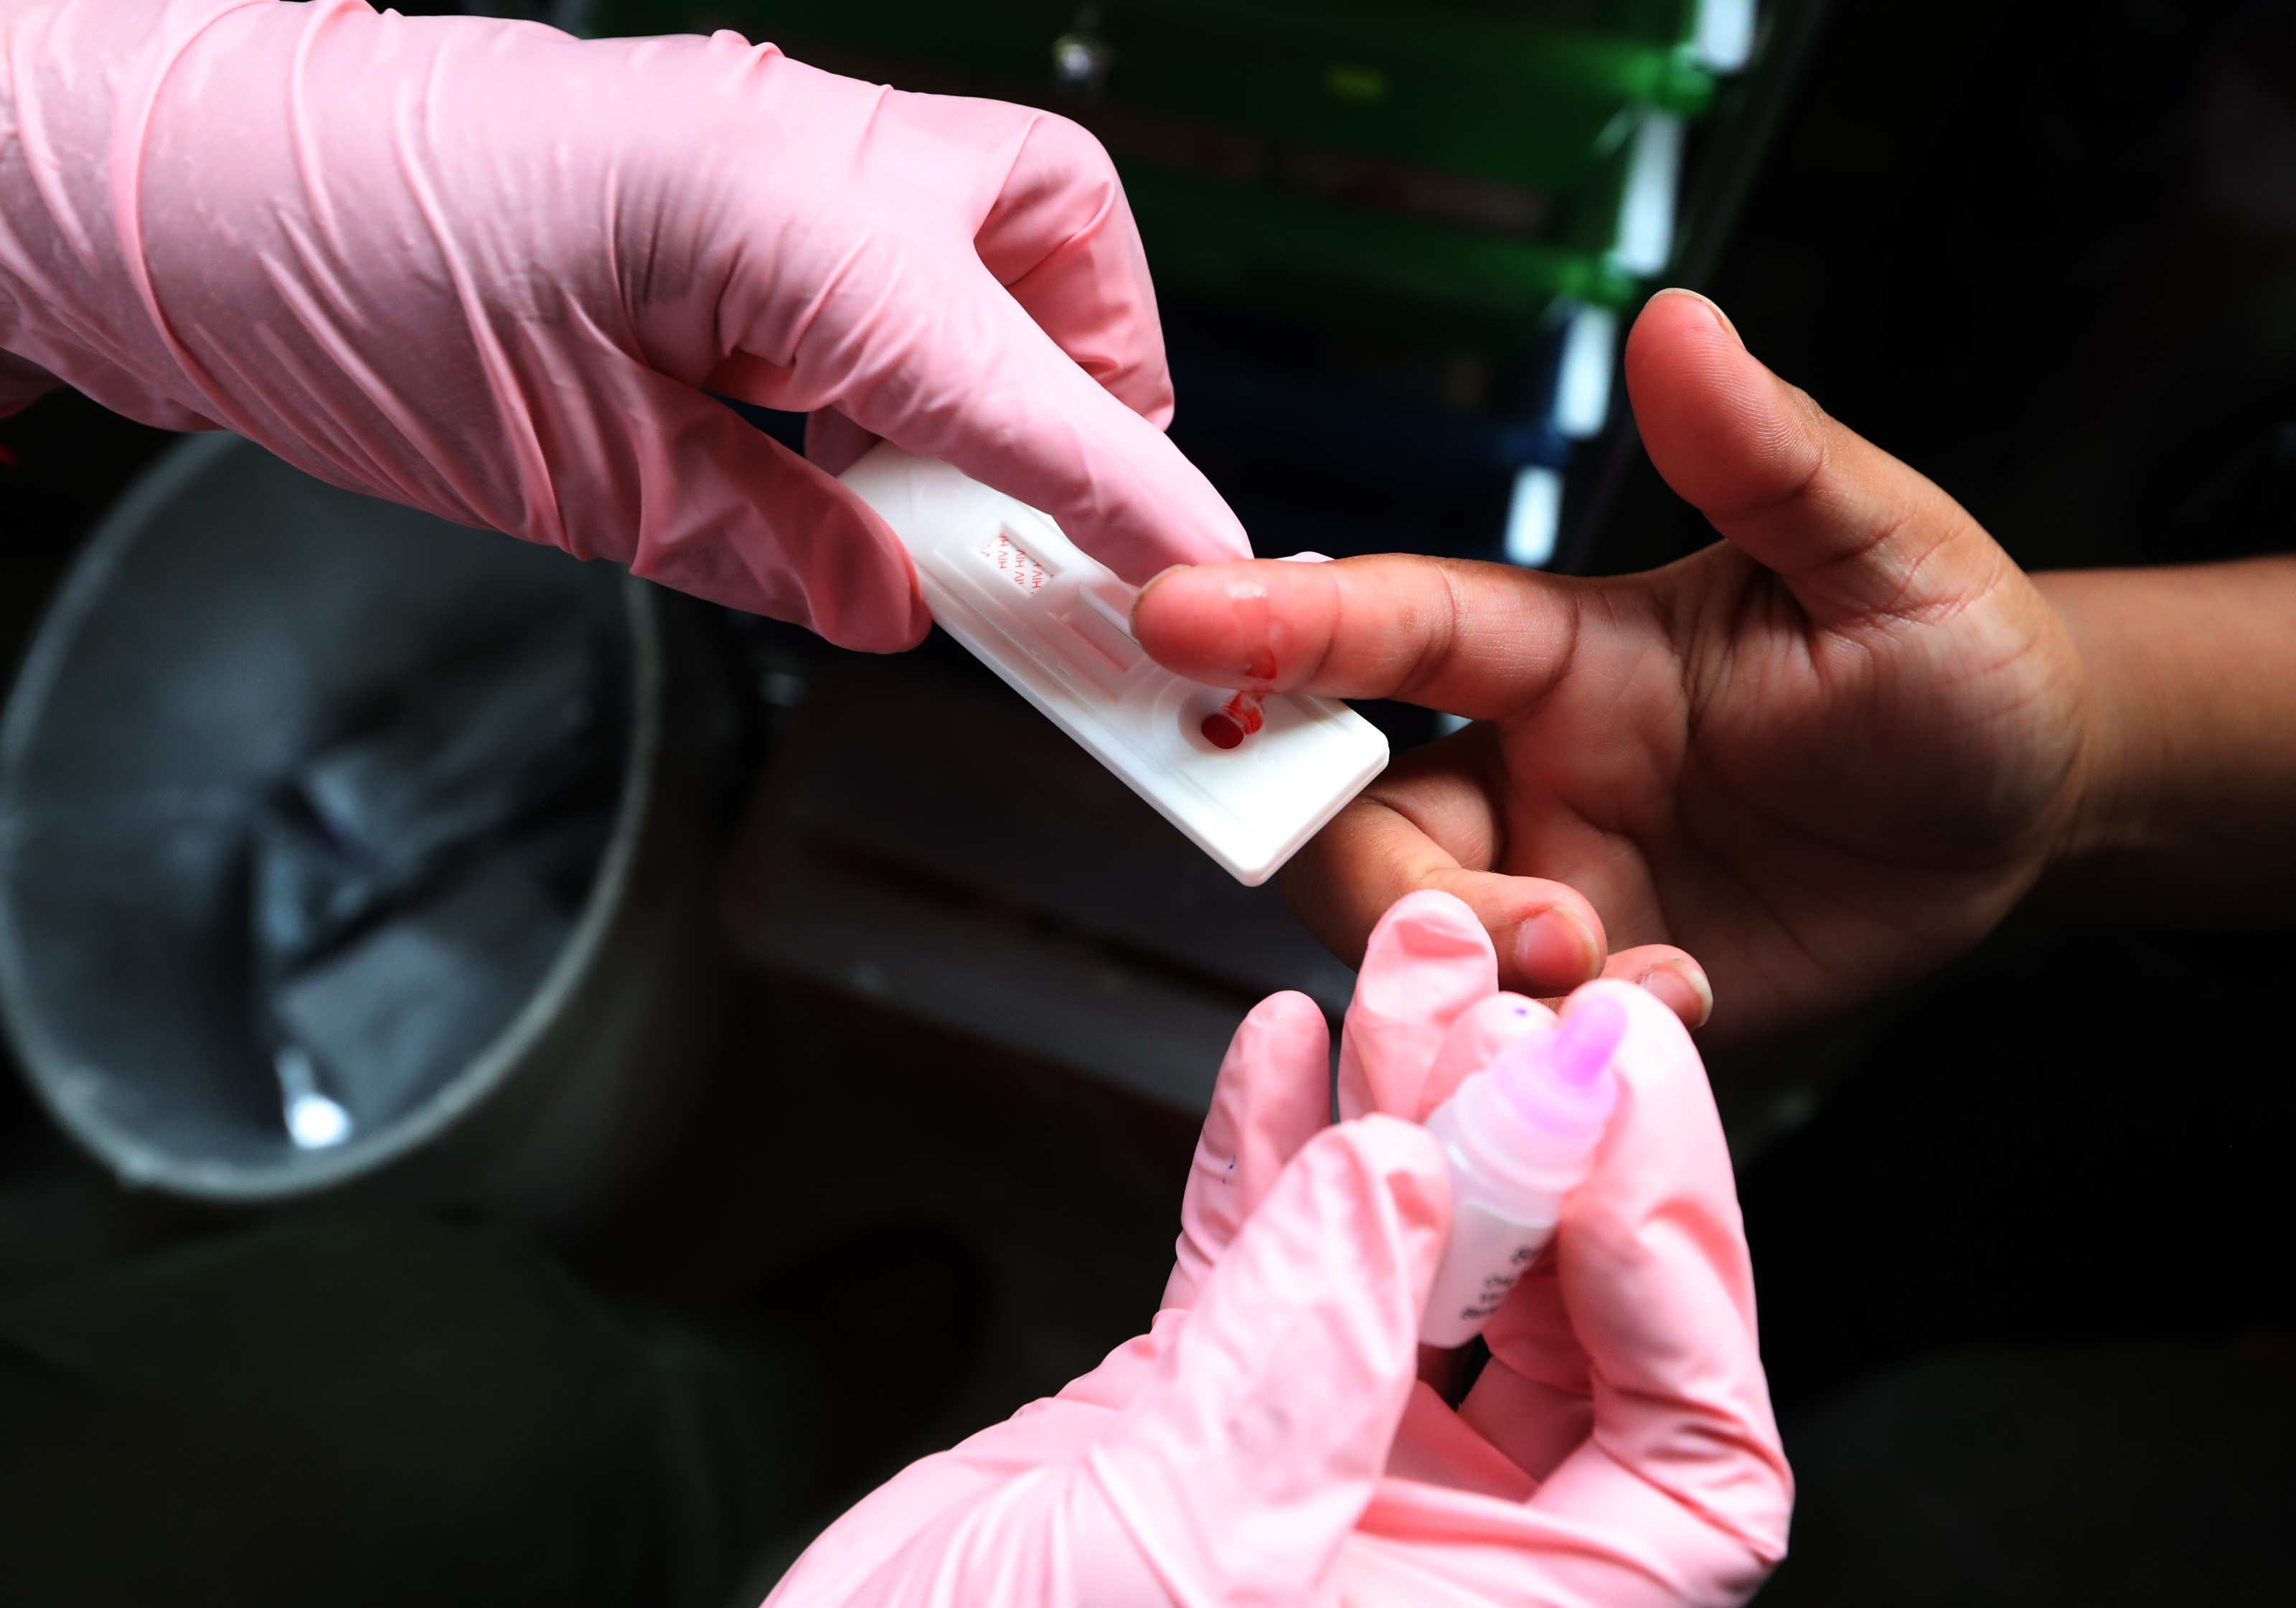 Durante la edición anterior de la Noche de los Testeos se observó que el 46% de los test de VIH realizados por AHF Argentina que resultaron positivos, fueron personas que llegaron tarde a su diagnóstico (presentadores tardíos), informó esa organización
